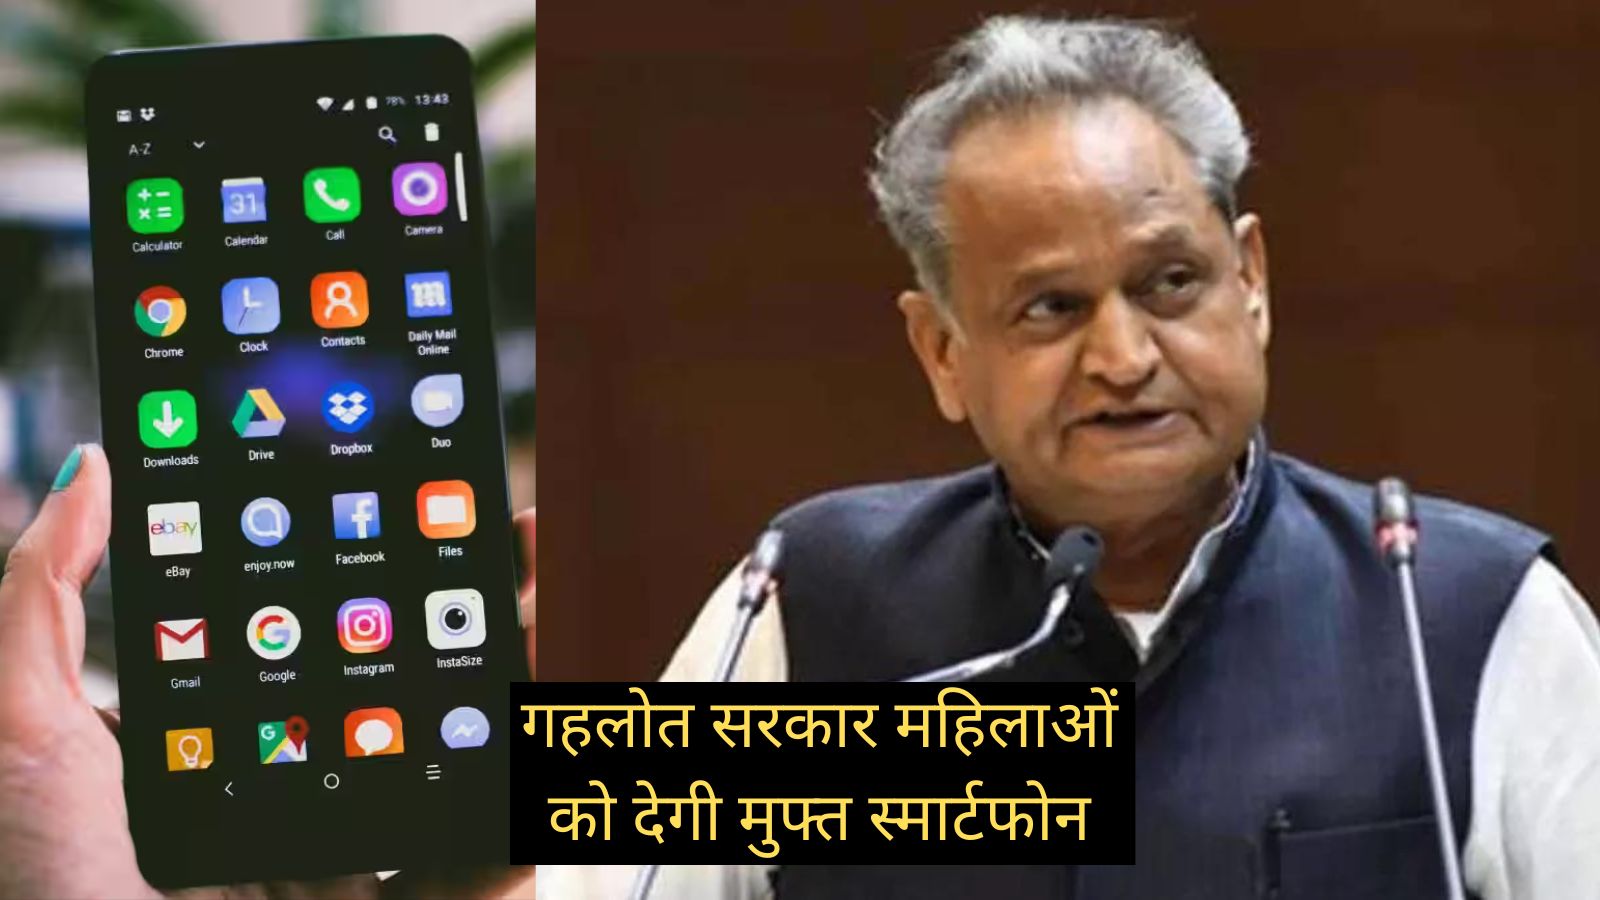 Rajasthan Free Mobile Yojana:इस राज्य की सरकार महिलाओं को देगी मुफ्त स्मार्टफोन,जानिए केसे करें रजिस्ट्रेशन, किन किन दस्तावेजो की जरूरत होगी?